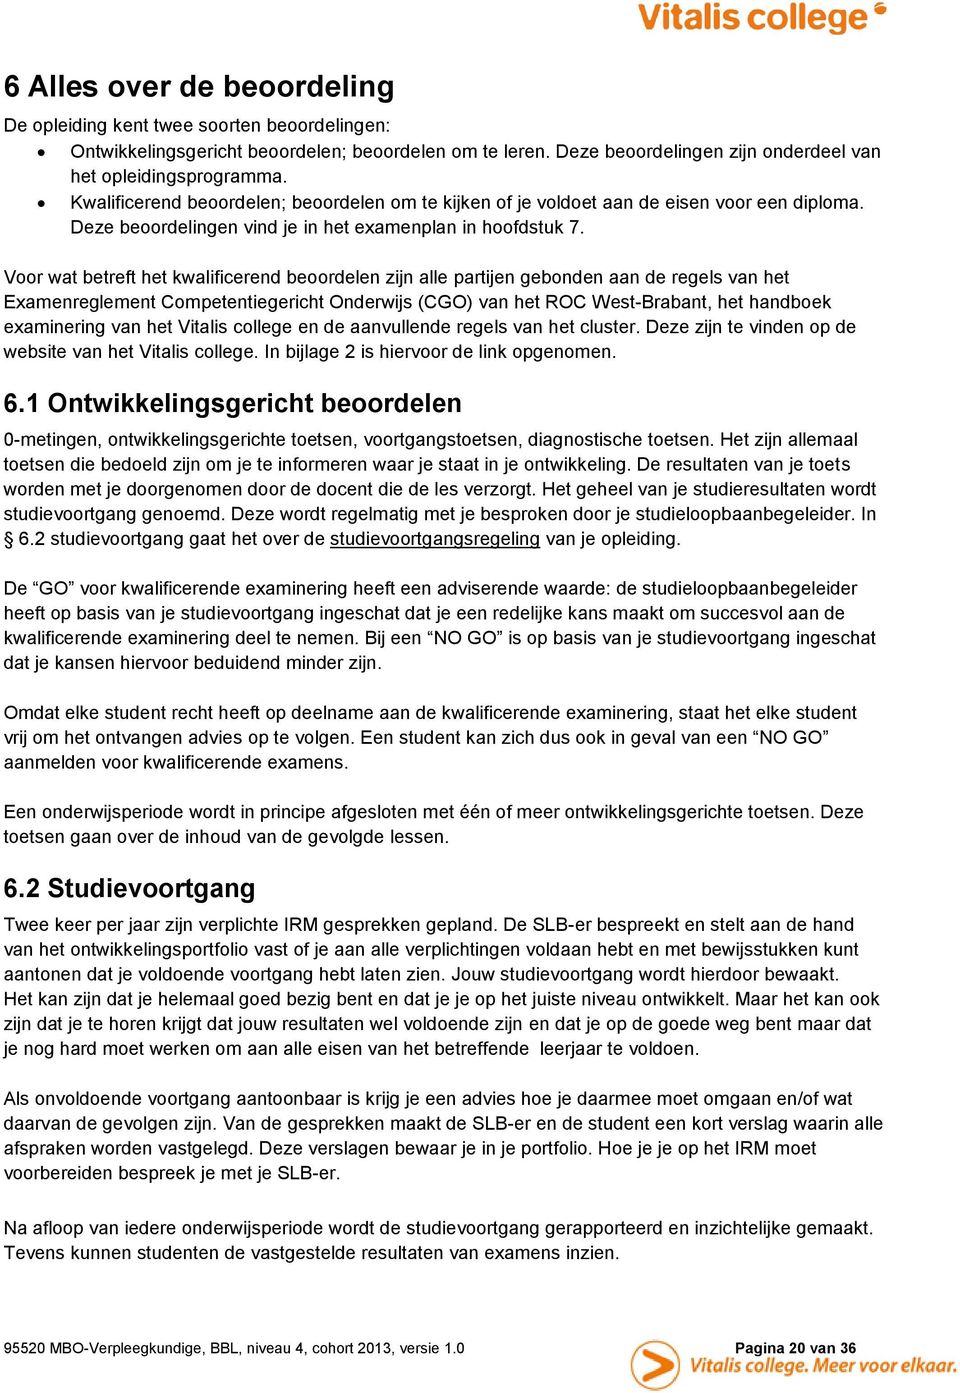 Voor wat betreft het kwalificerend beoordelen zijn alle partijen gebonden aan de regels van het Examenreglement Competentiegericht Onderwijs (CGO) van het ROC West-Brabant, het handboek examinering